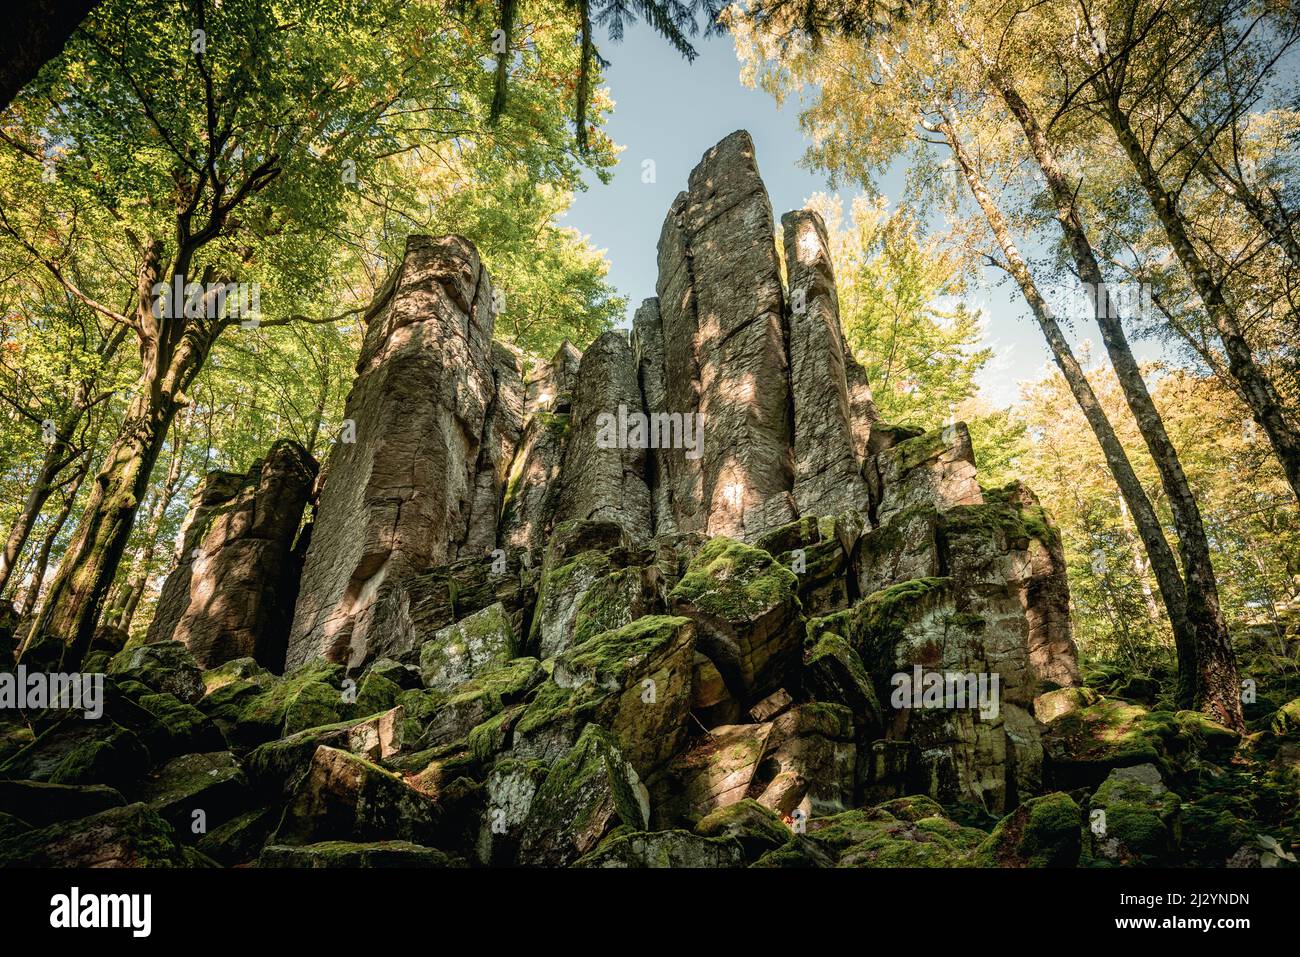 Steinwand rock formation near Poppenhausen, Rhoen, Hesse, Germany, Europe Stock Photo